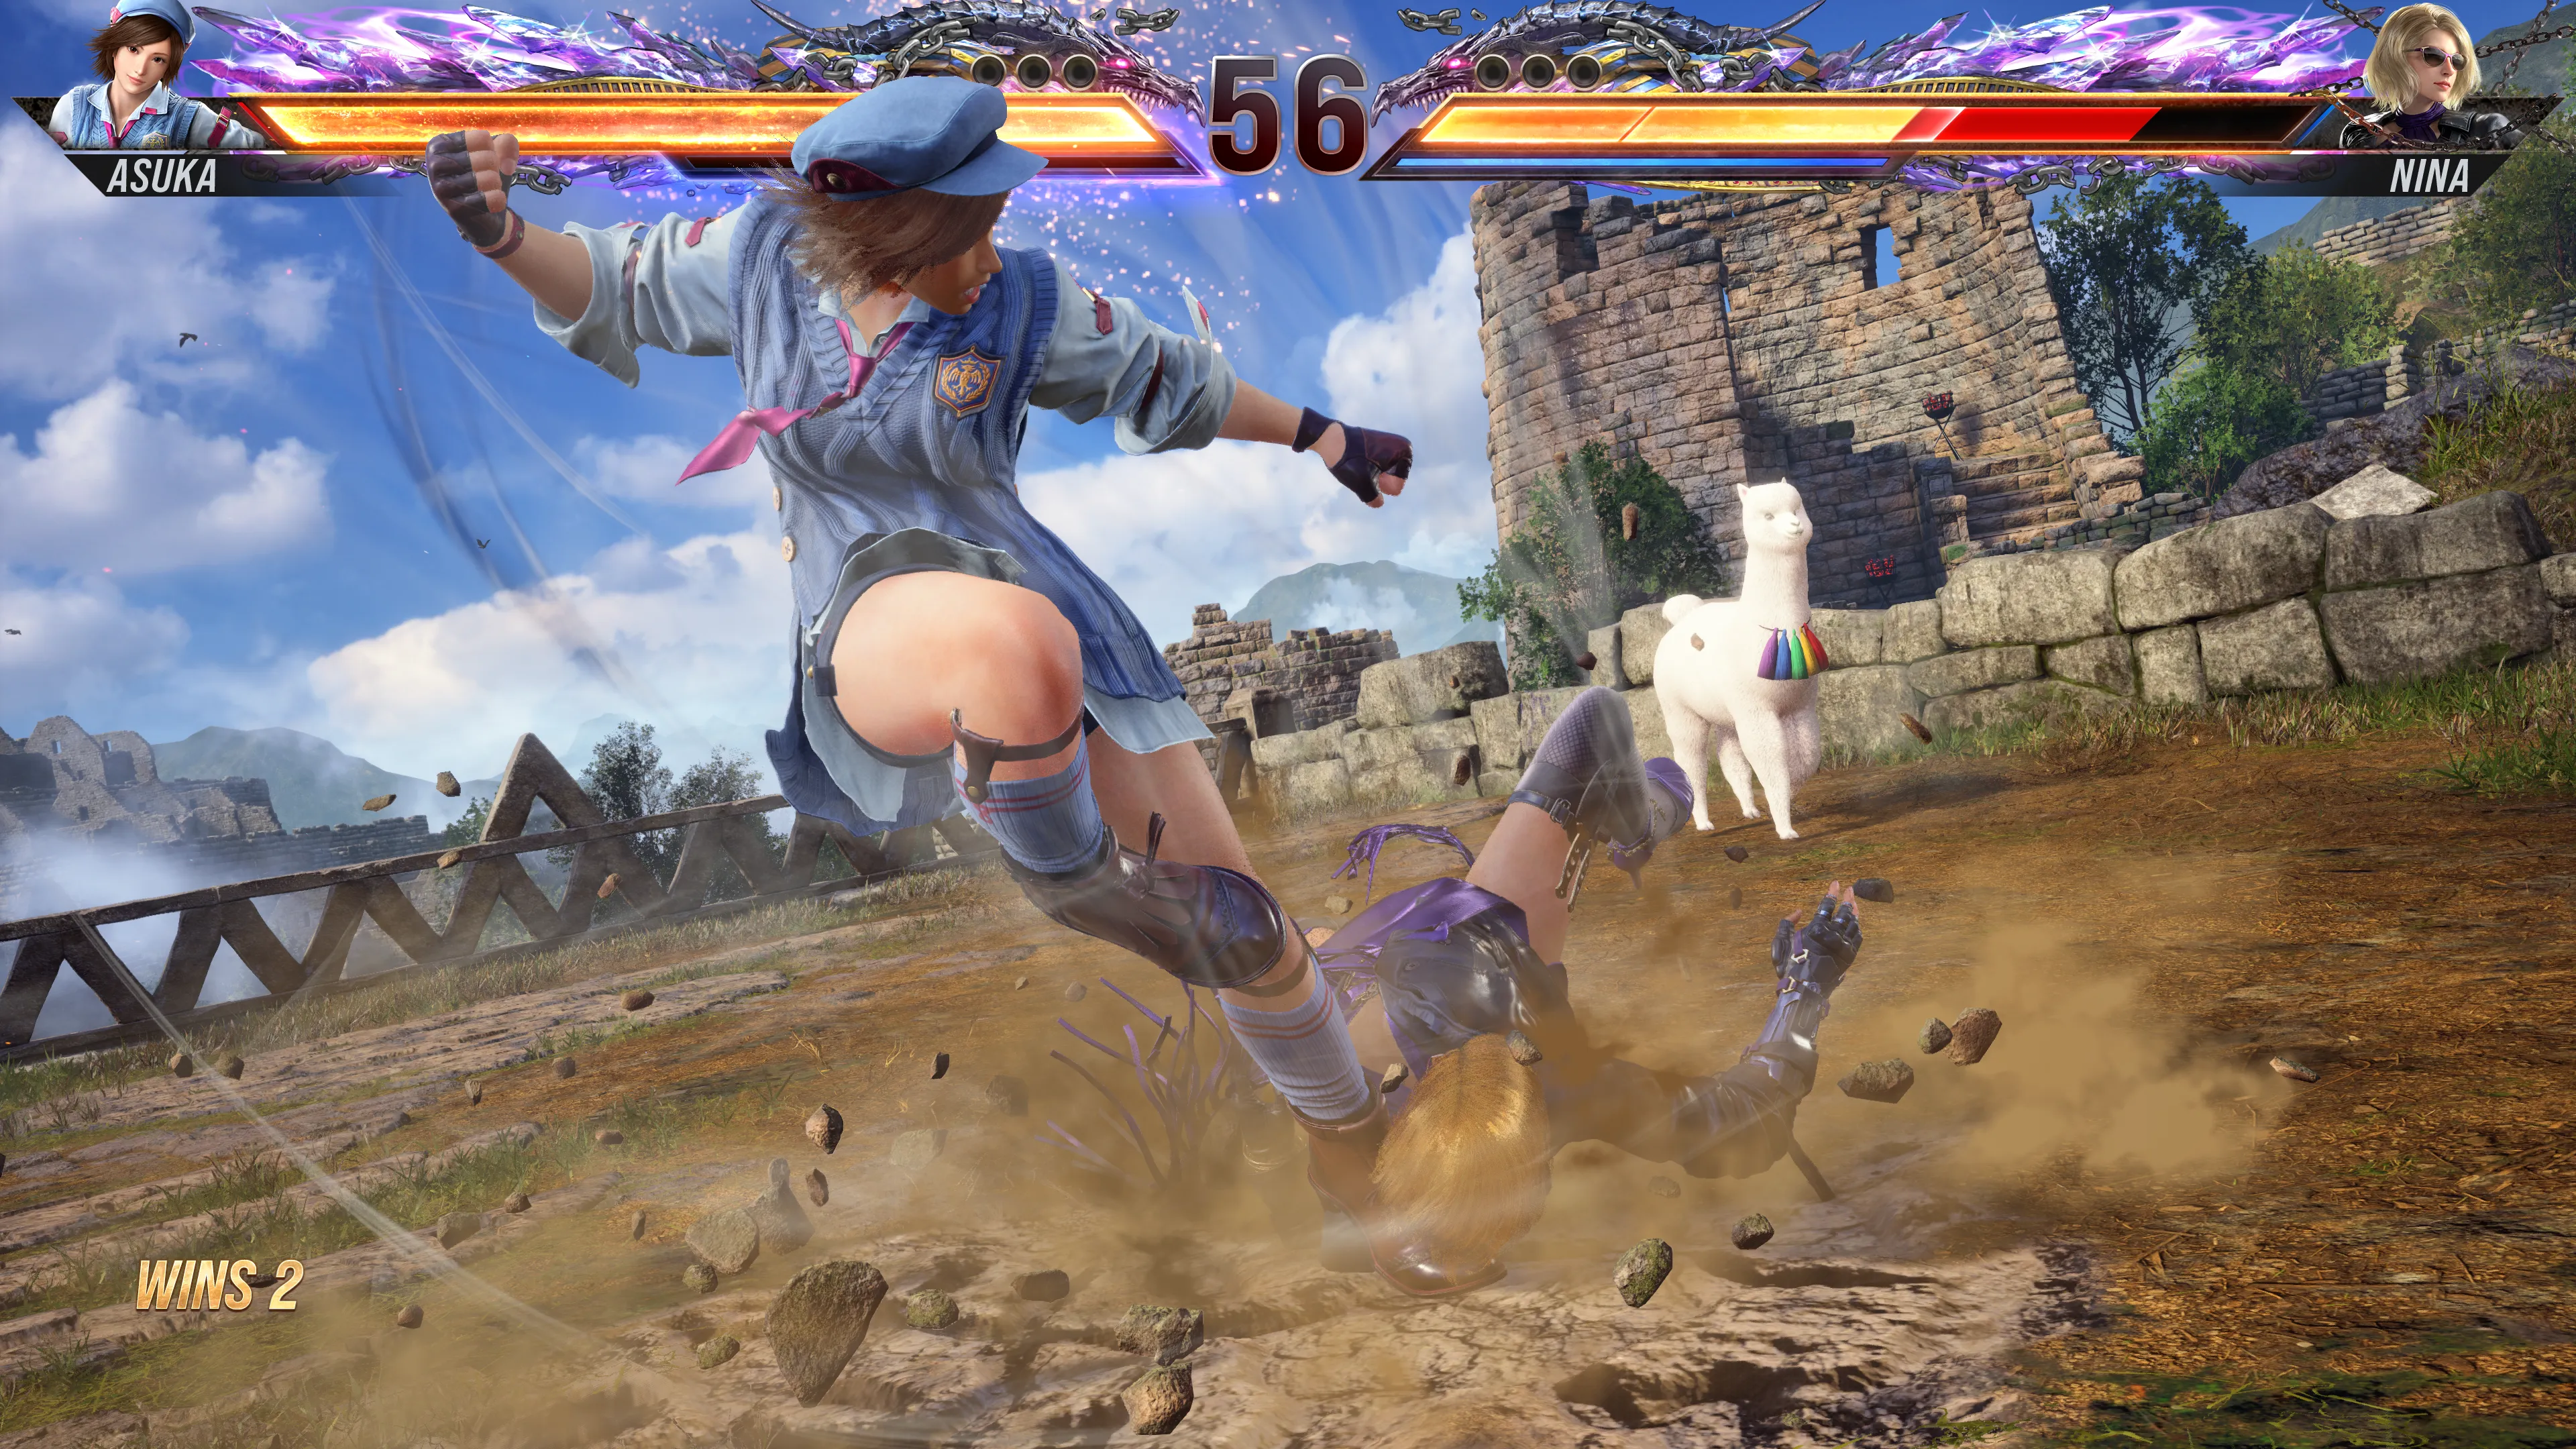 Asuka executing her Heat Smash on Nina in Tekken 8